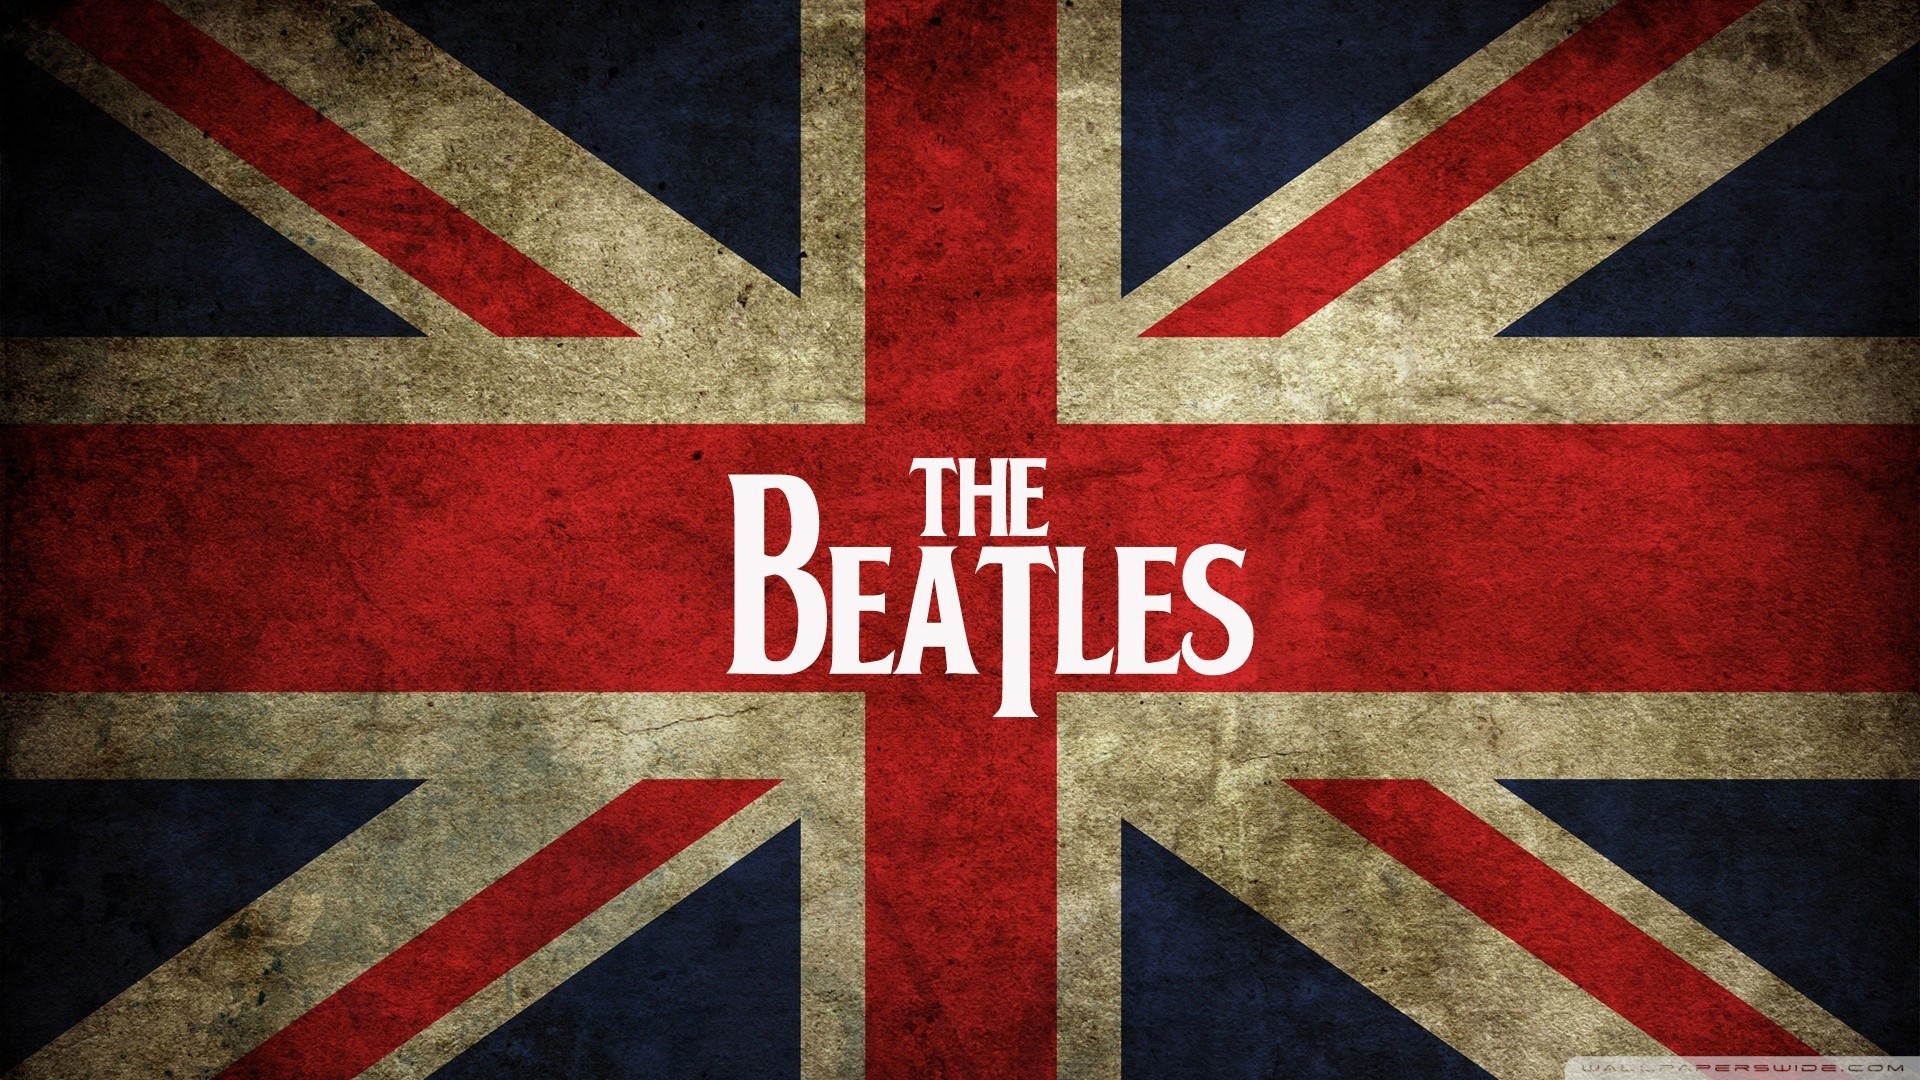 General 1920x1080 The Beatles flag music grunge British flag British UK band logo logo digital art watermarked